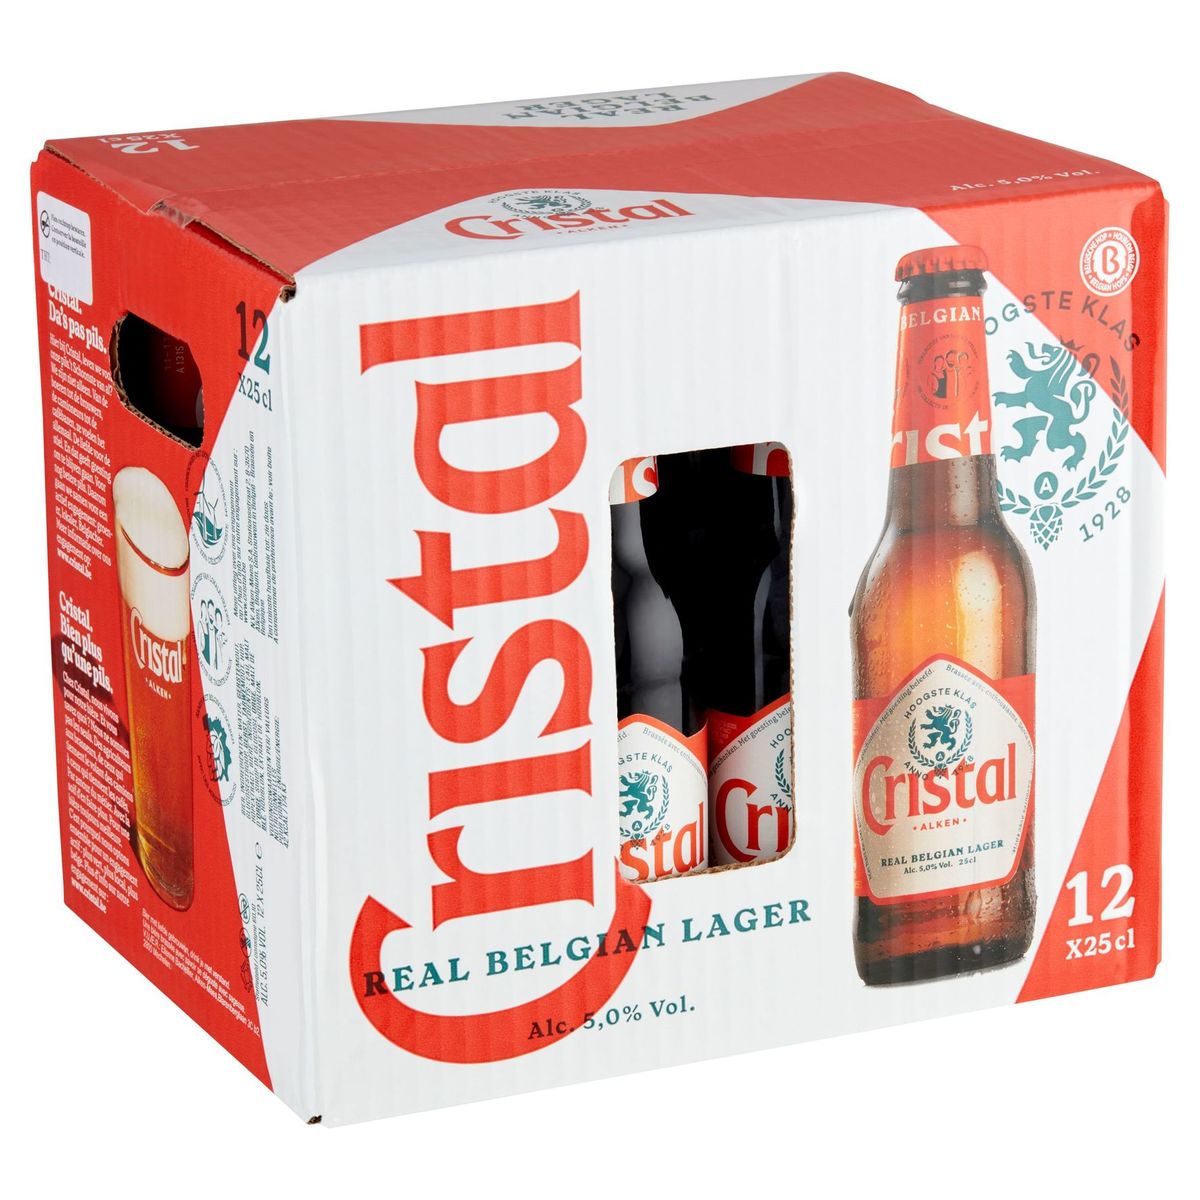 Cristal Bière blonde Pils 5%ALC 12 x 25 cl box